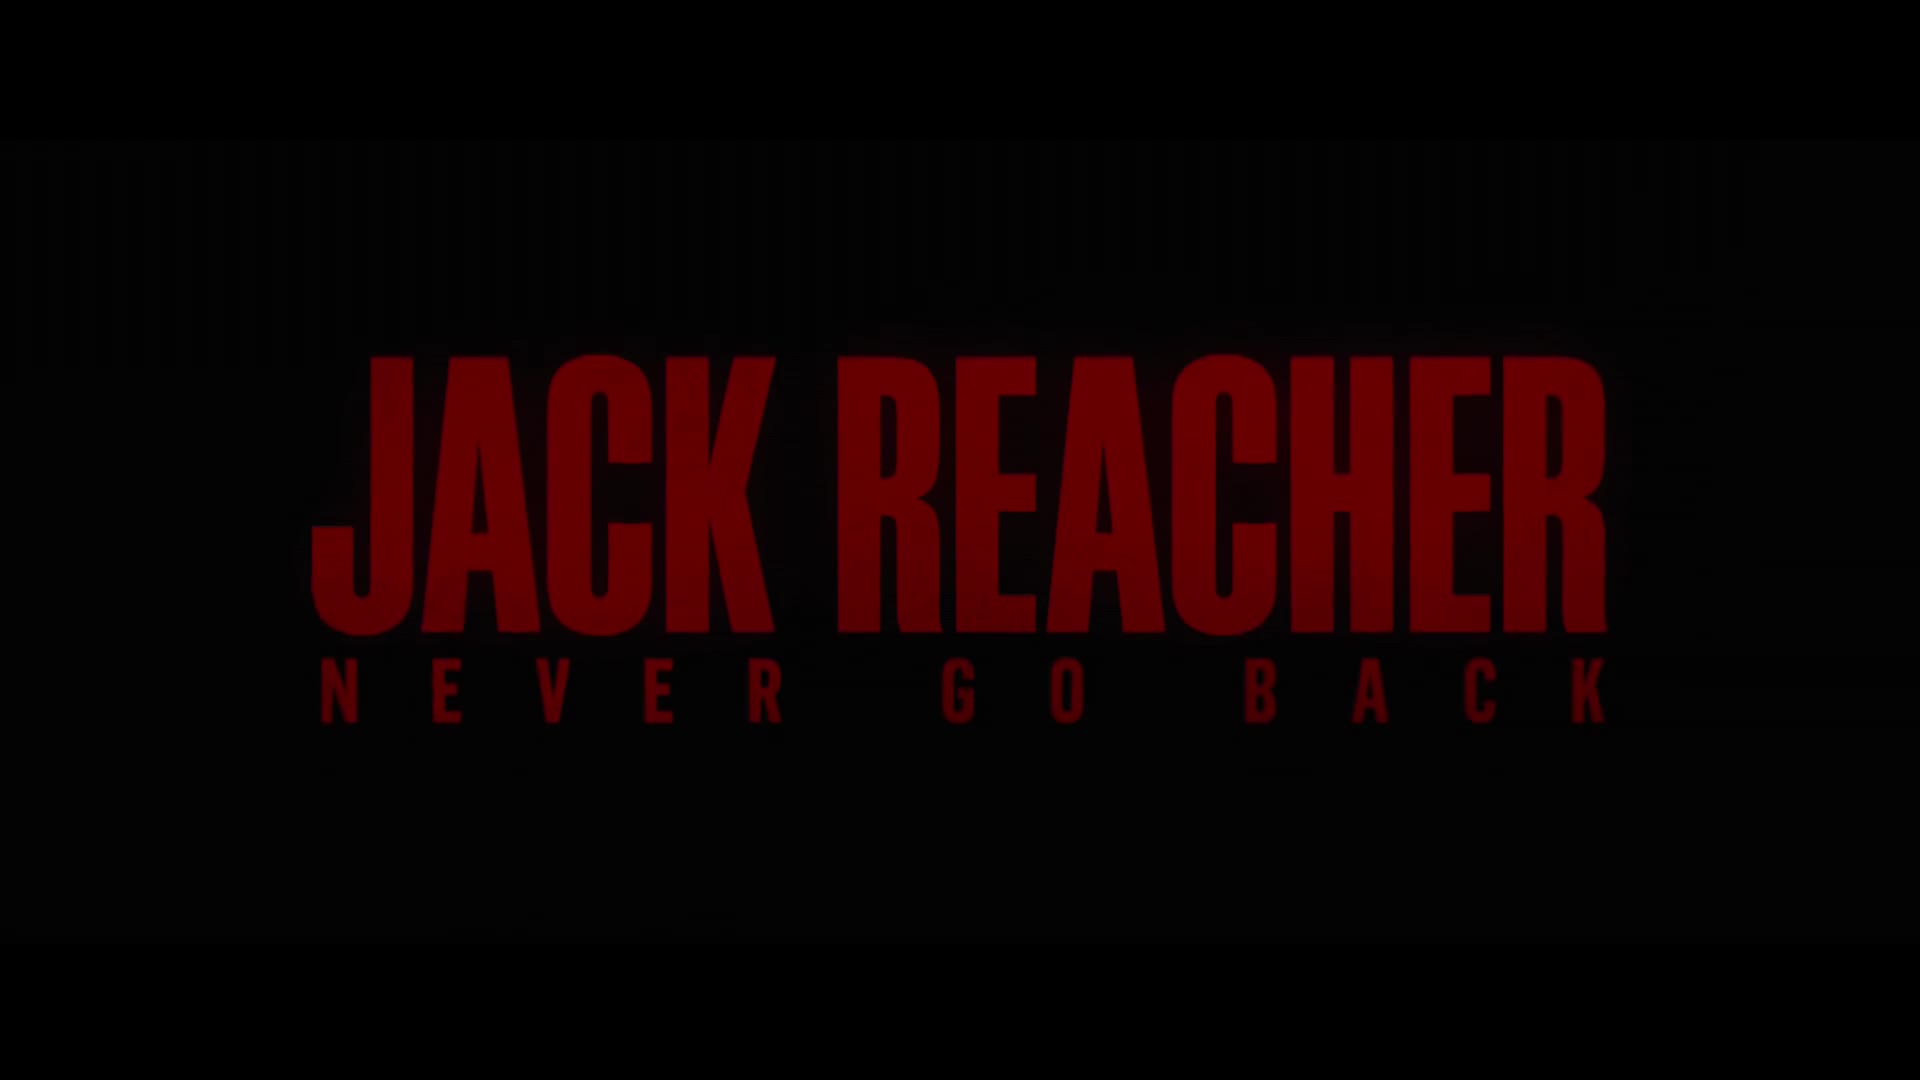 Jack Reacher: Never Go Back (Trailer) - Movie trailer - Y8.com